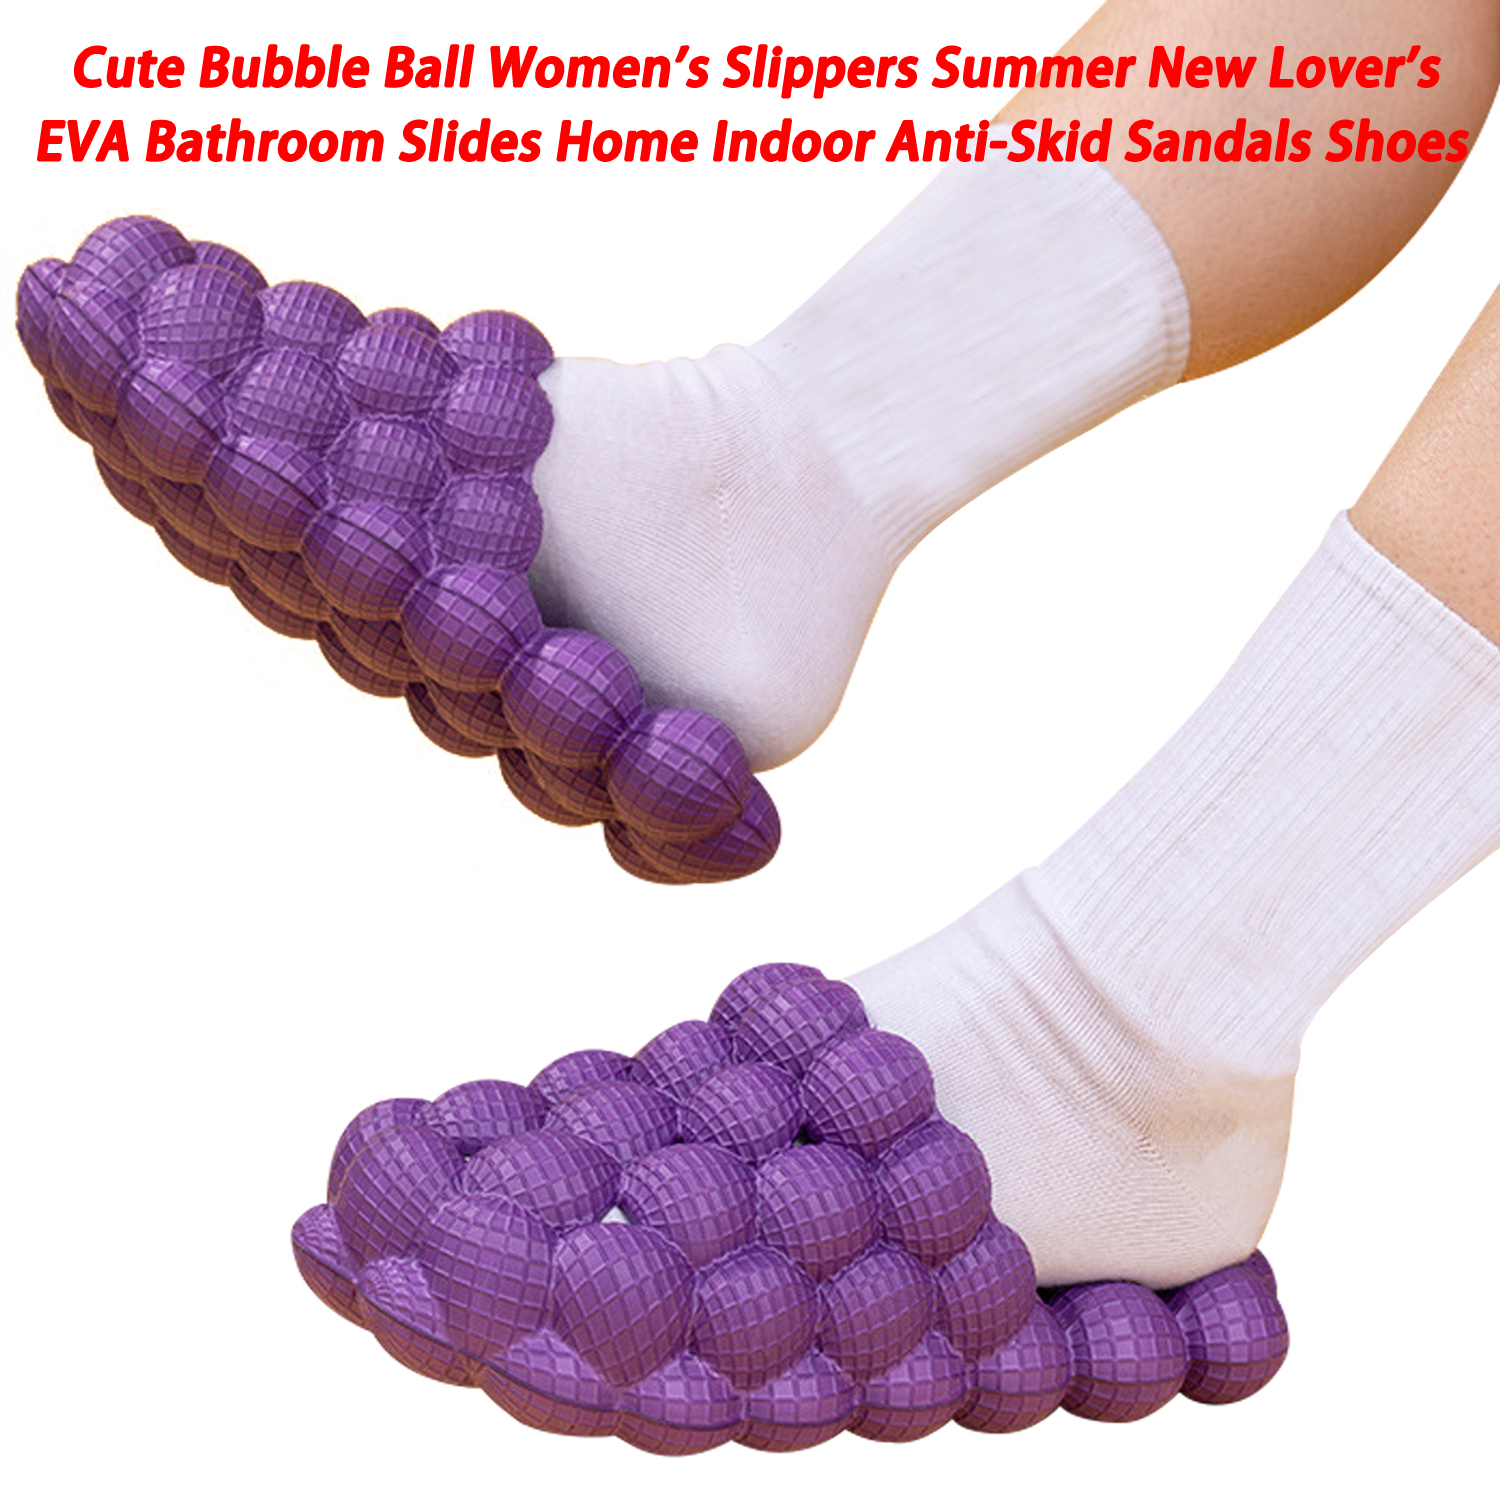 Lindas pantuflas de bola de burbujas para mujer, novedad de verano, toboganes de baño de EVA para amantes, sandalias antideslizantes para interiores para el hogar, zapatos